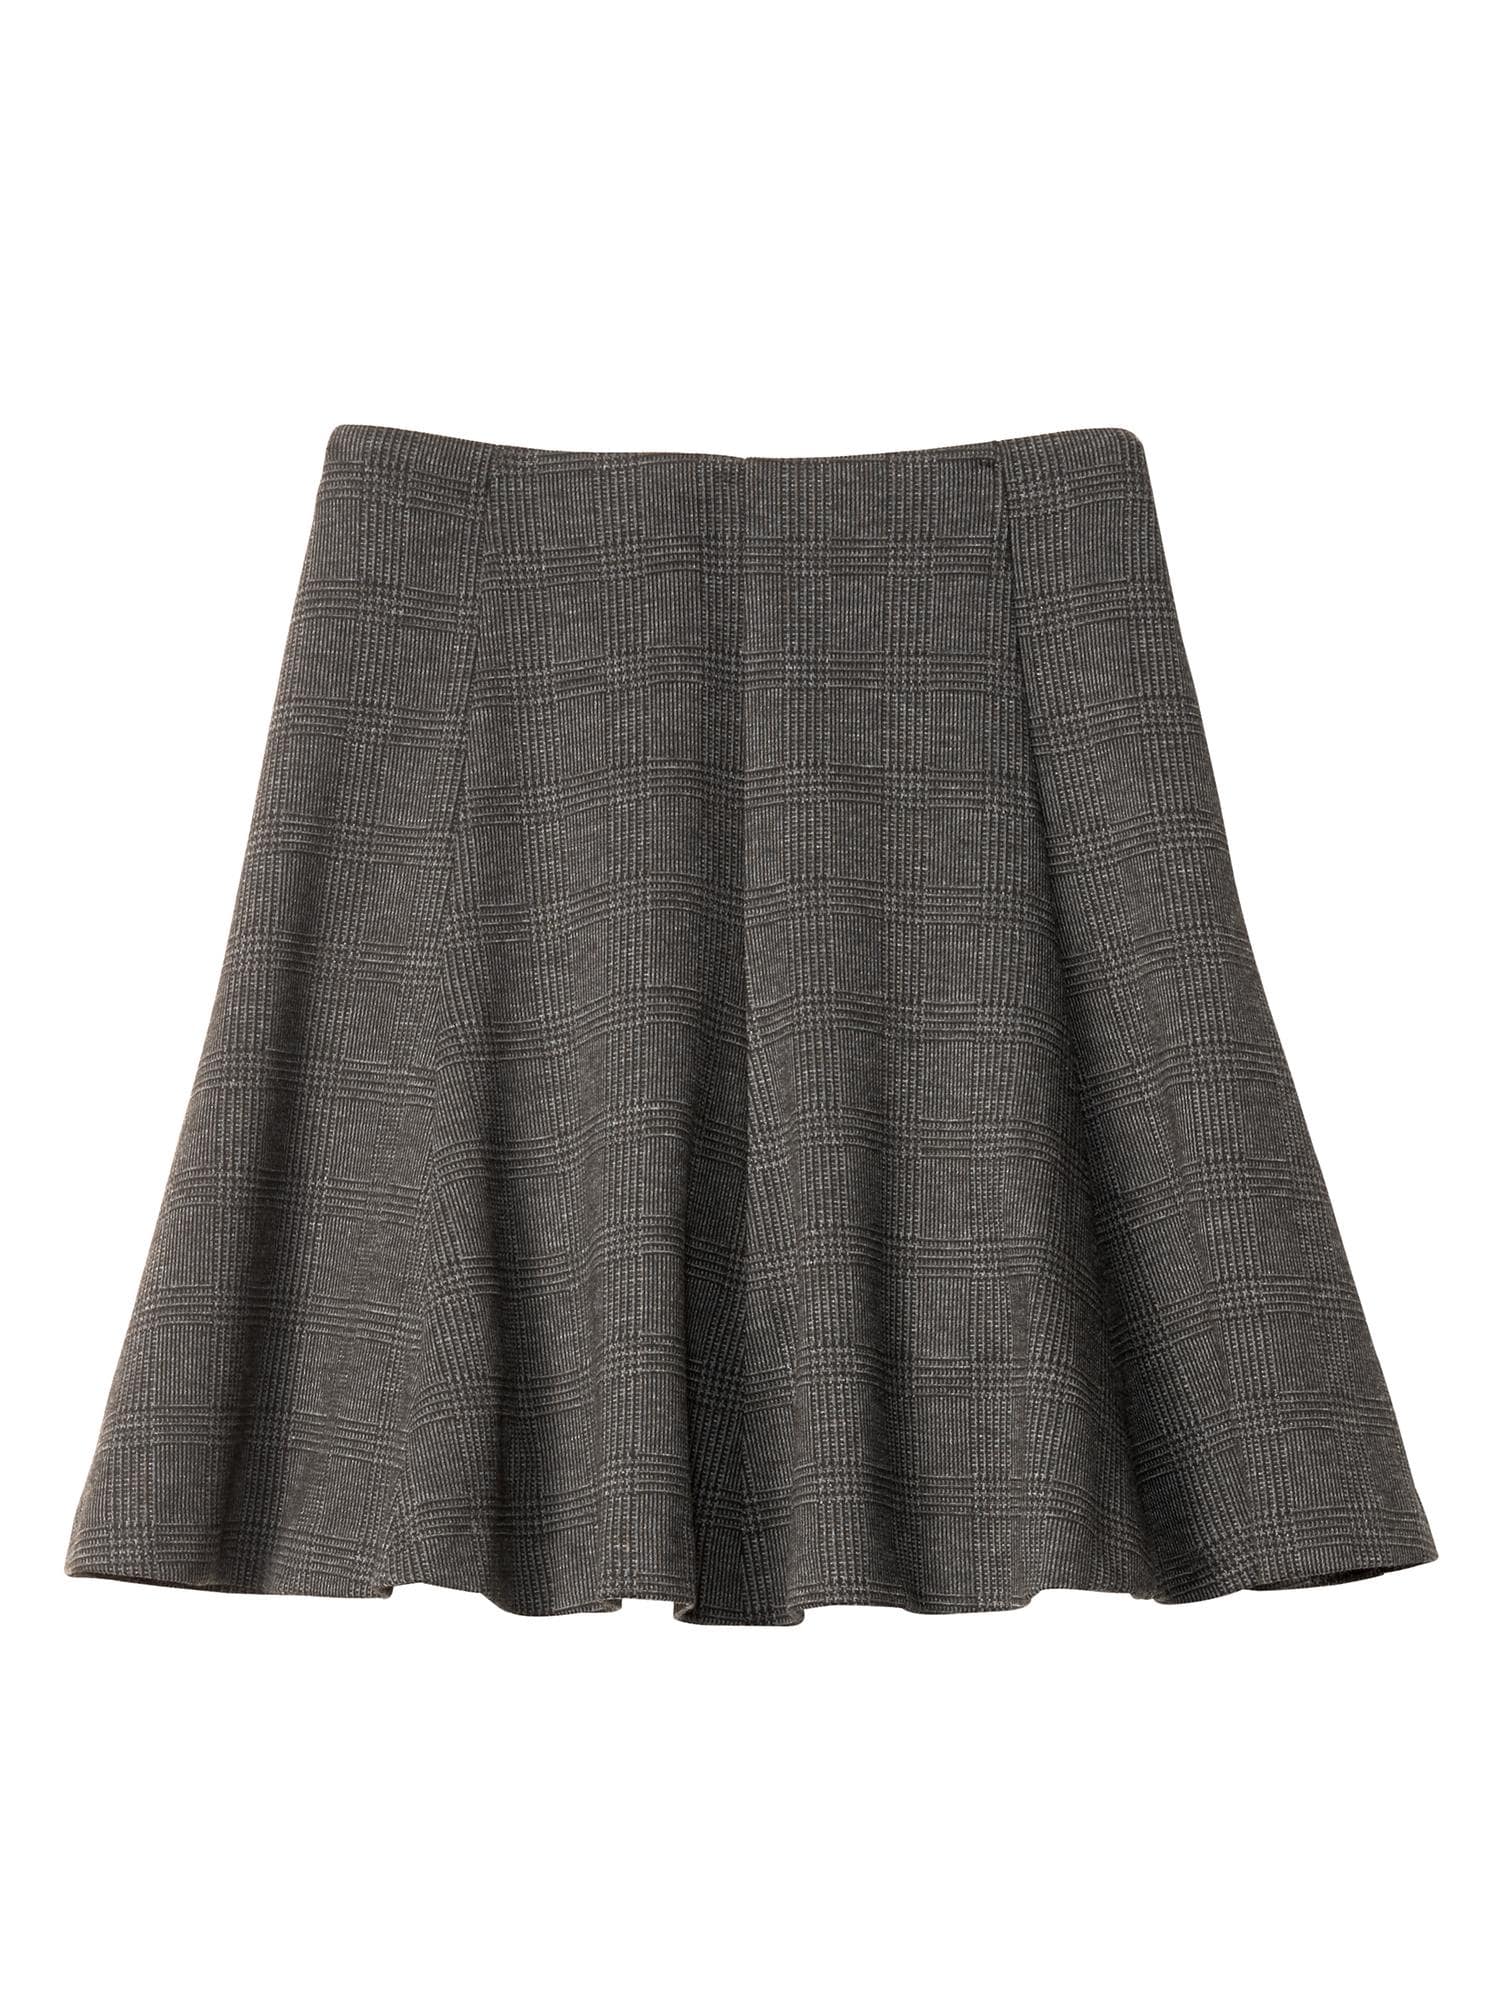 Plaid Flounce Skirt